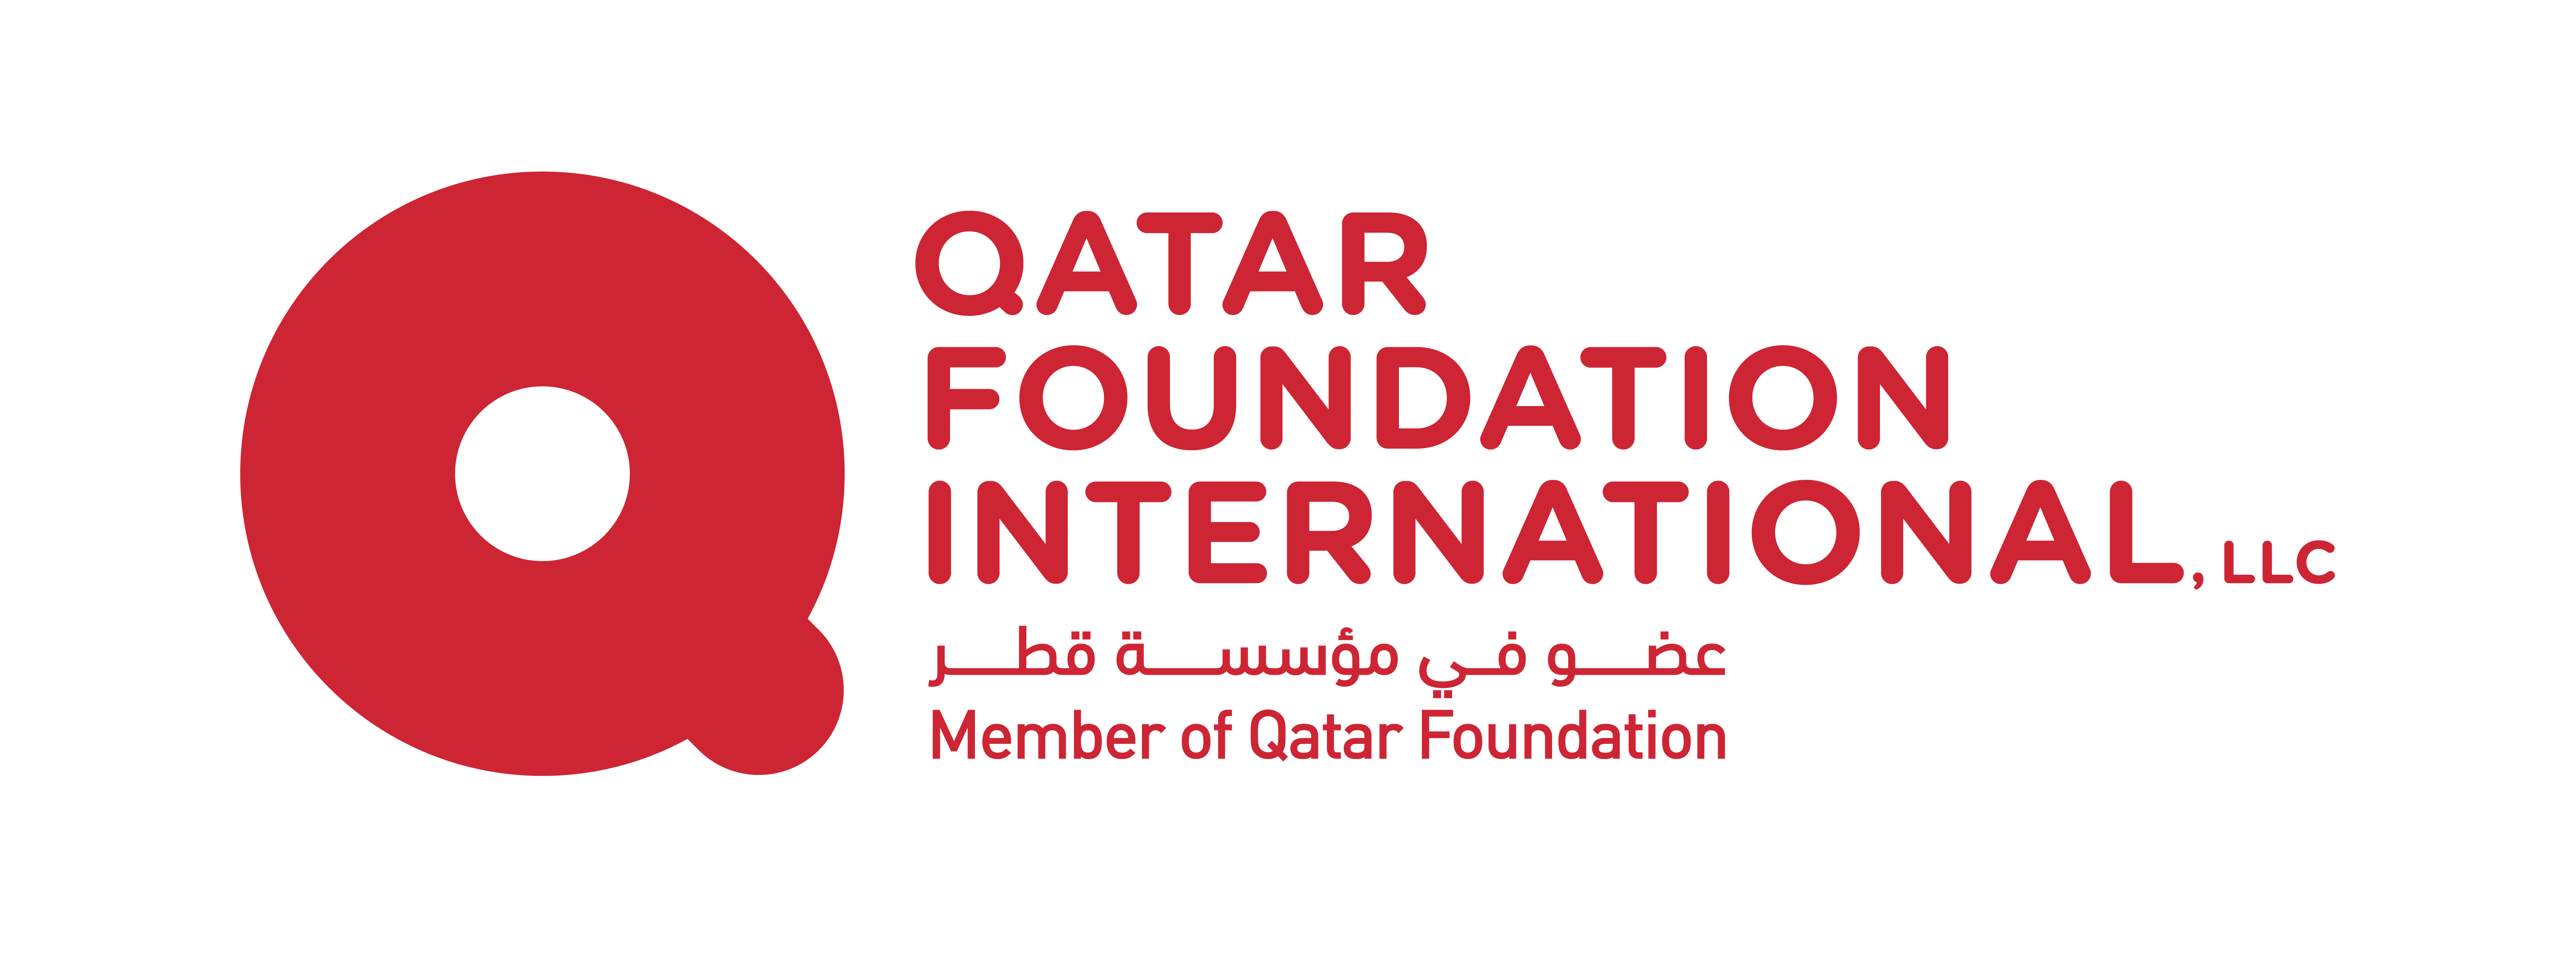 Qatar Foundation International logo